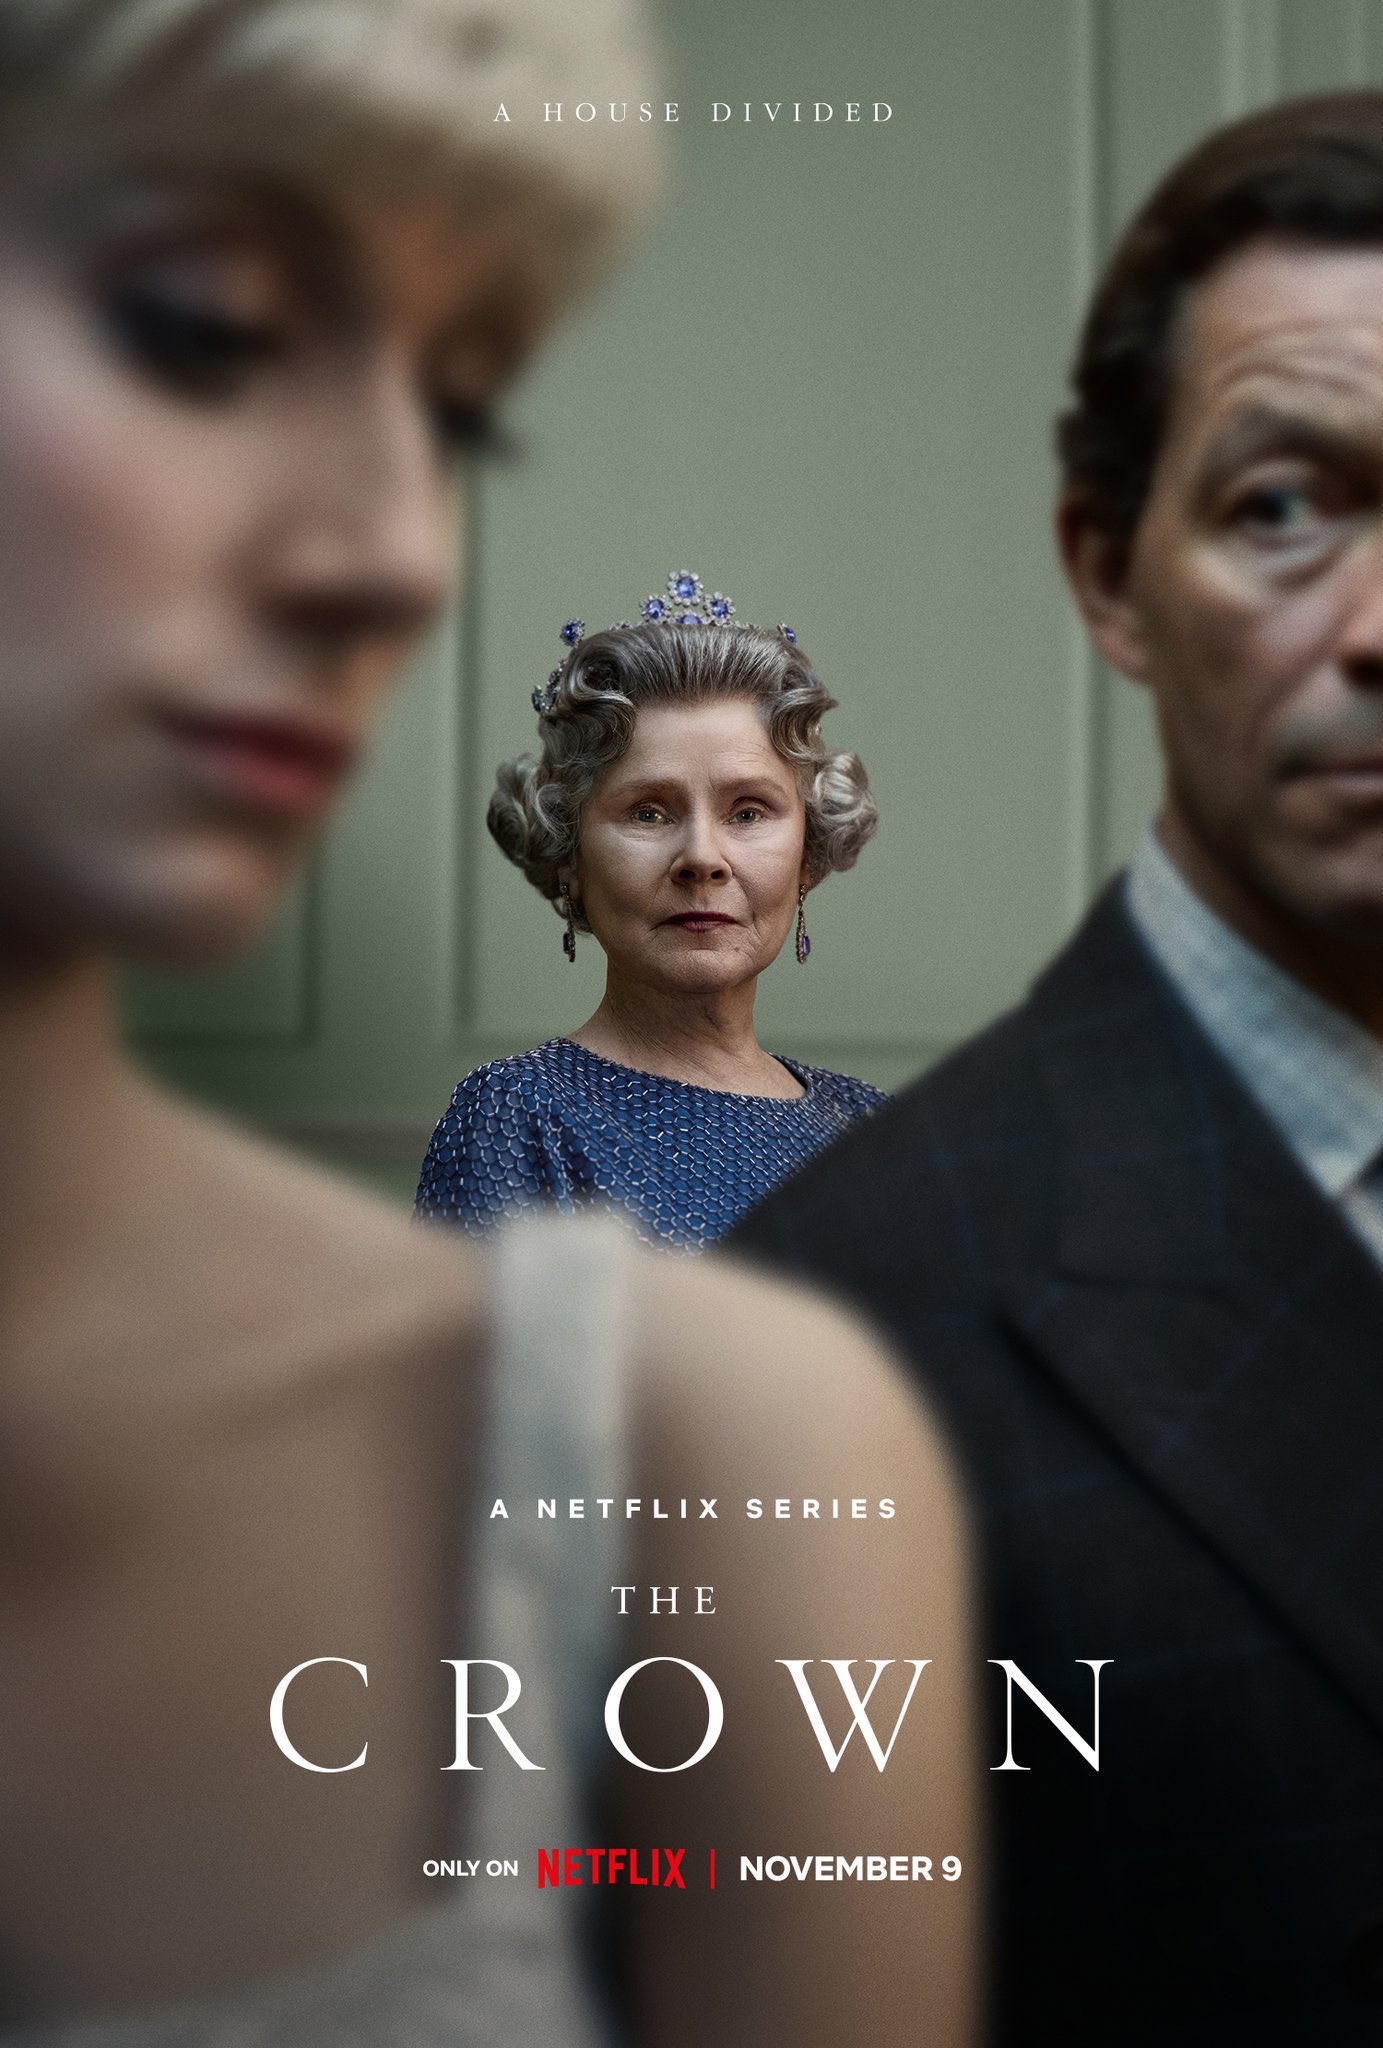 En uno de los póster se puede apreciar a Imelda Staunton caracterizada como Elizabeth II. (Netflix)